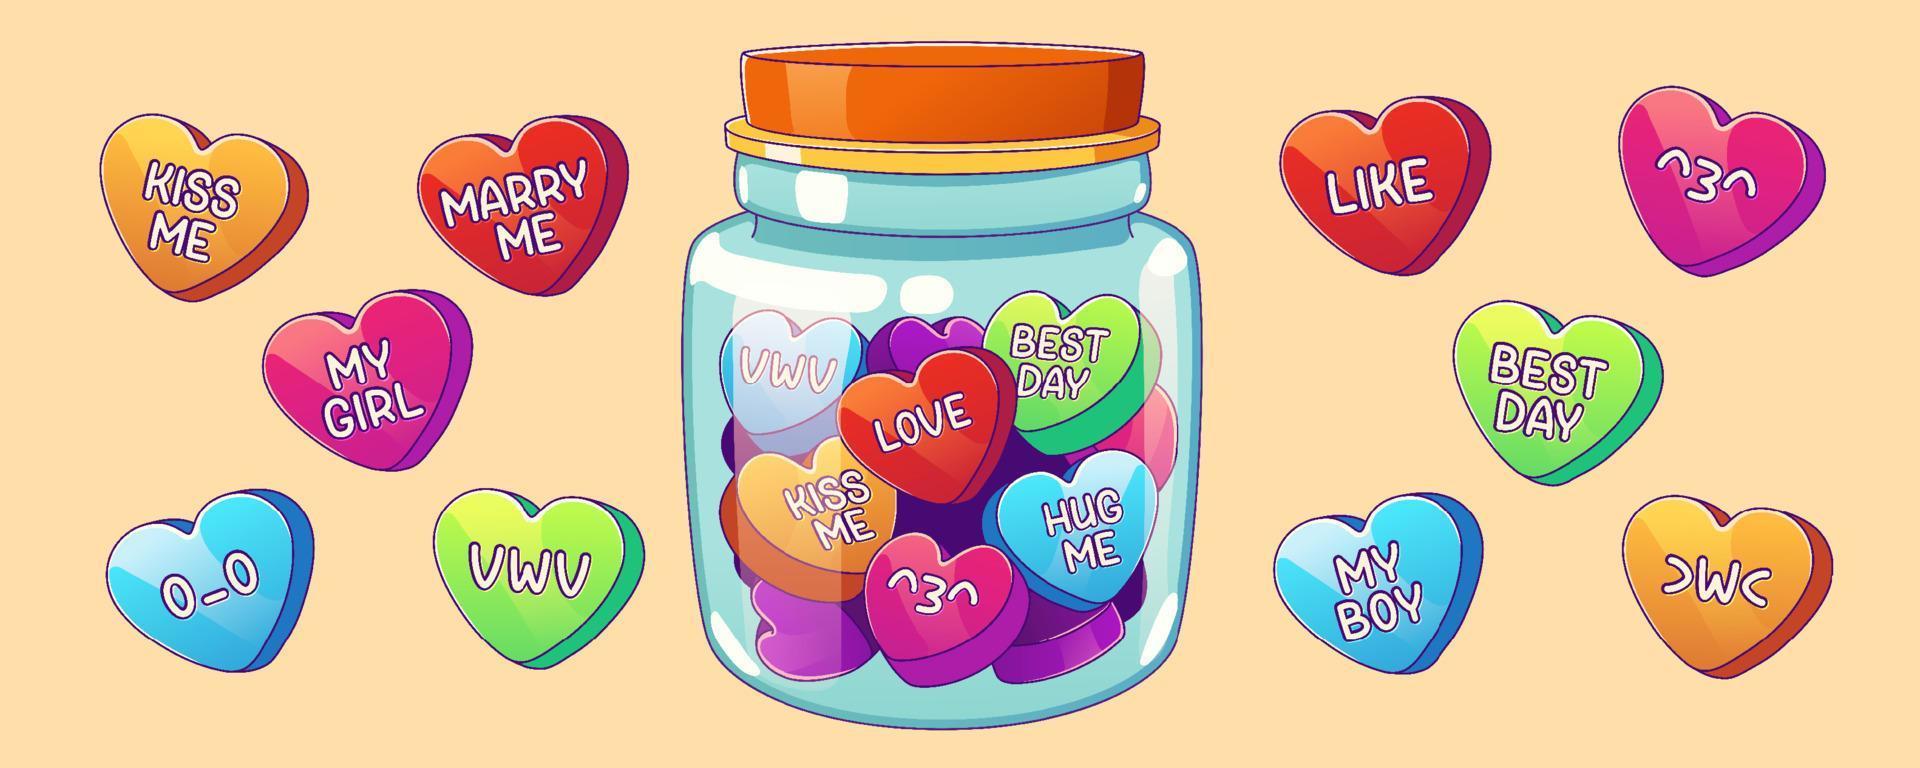 Süss Valentinstag, Liebe Süßigkeiten im Herz gestalten vektor